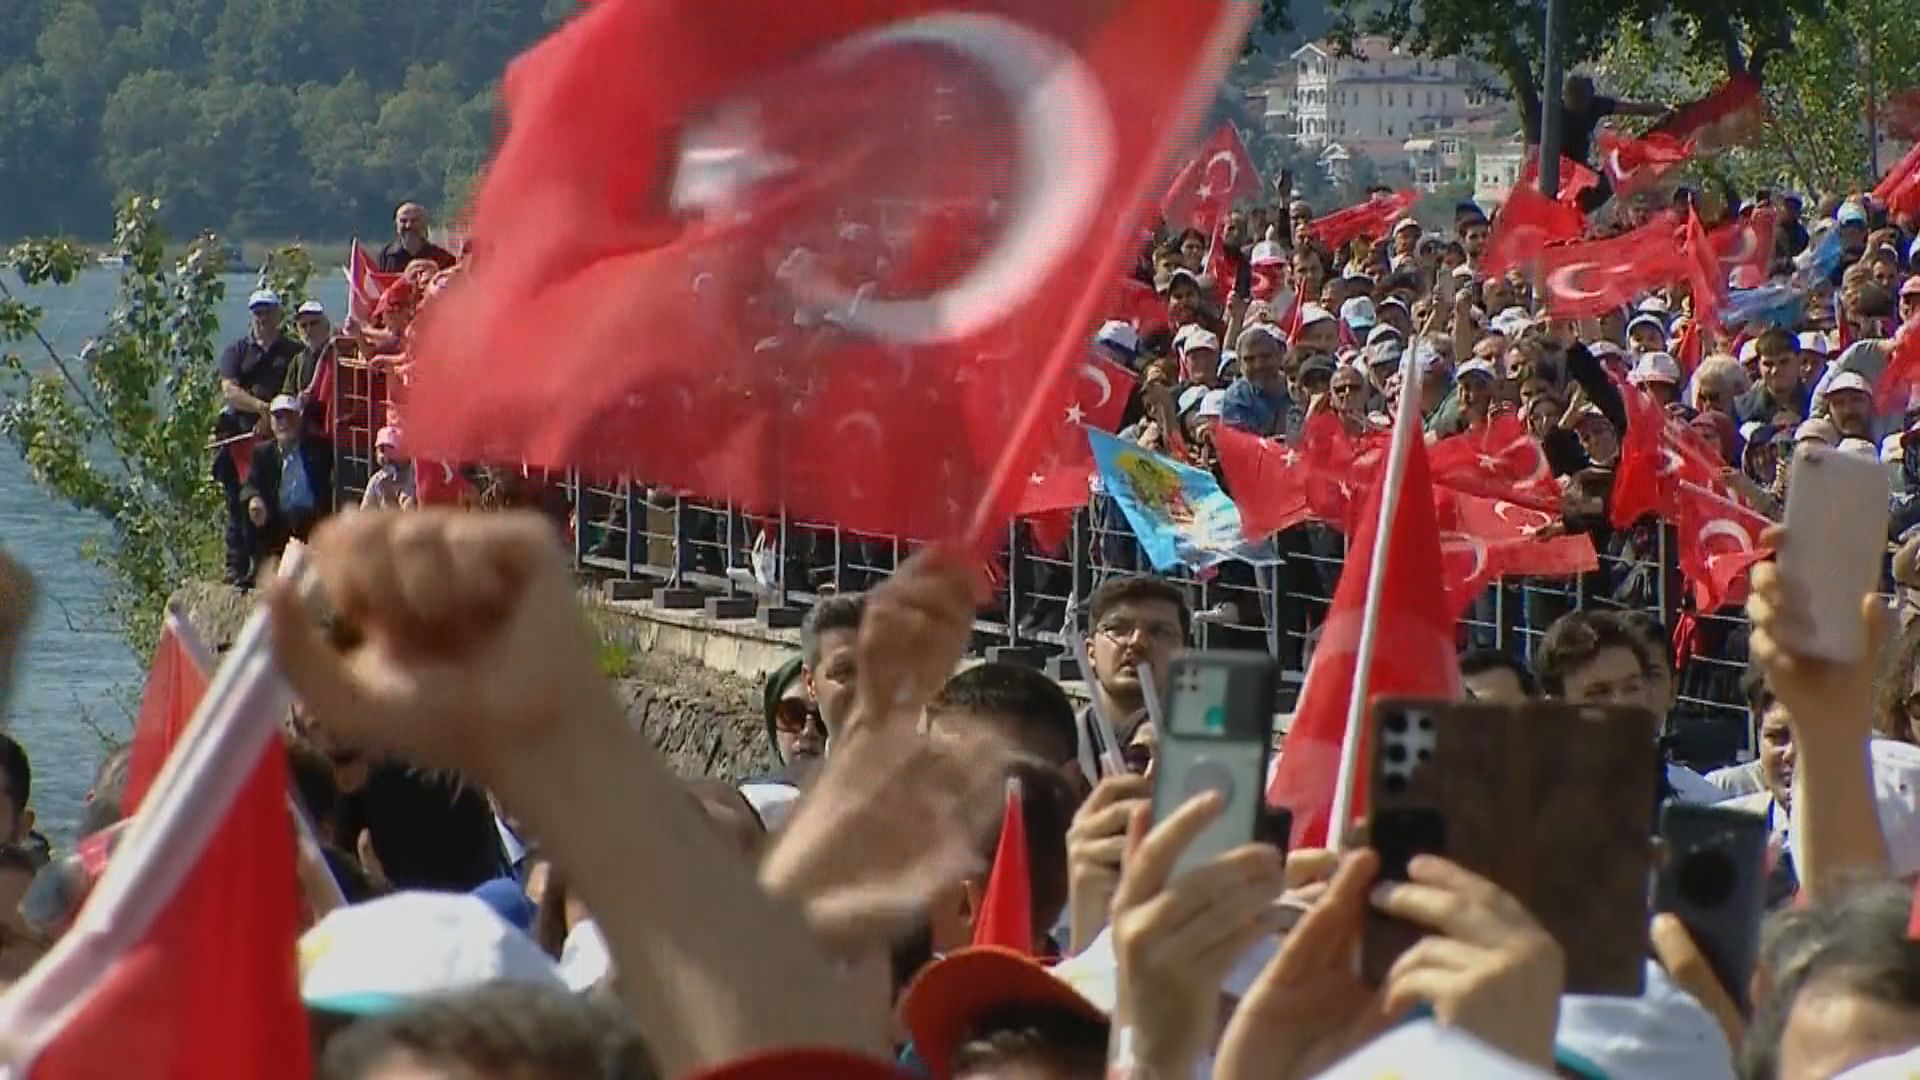 土耳其總統大選兩位候選人造勢拉票